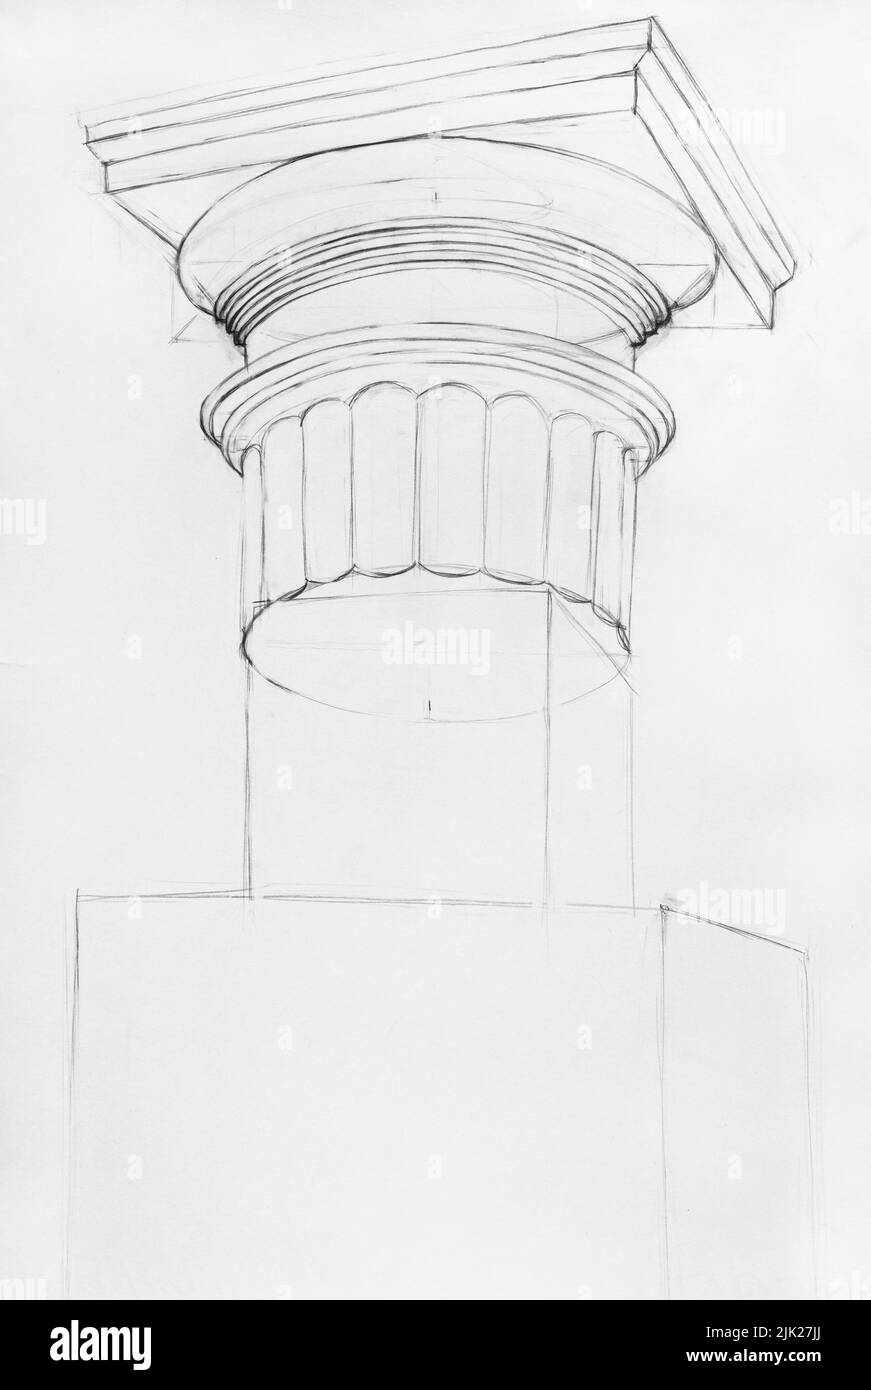 Etapa del dibujo académico del capital dórico dibujado a mano con lápiz negro sobre papel blanco Foto de stock